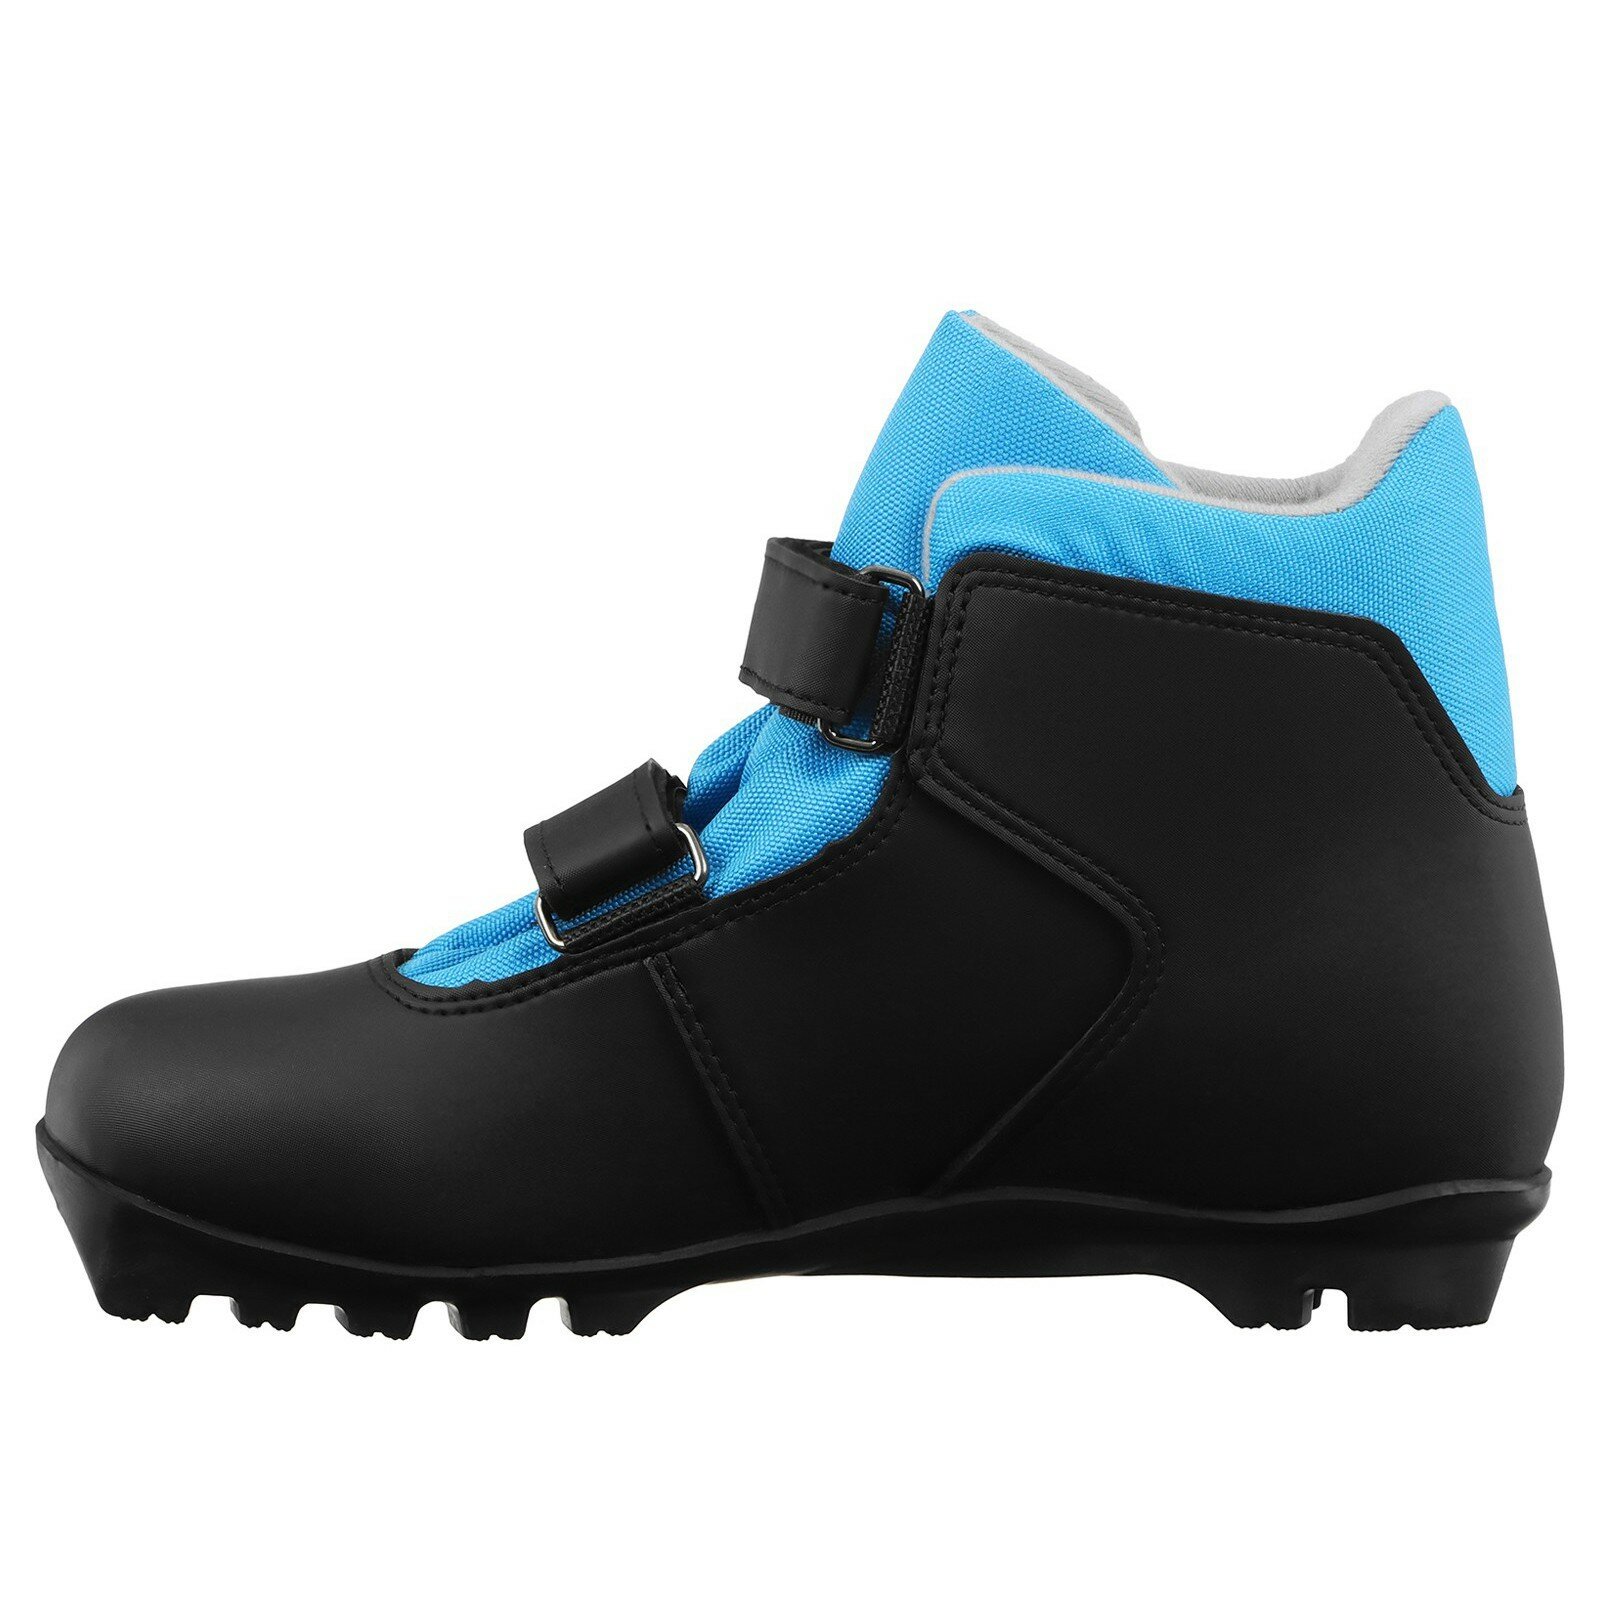 Ботинки лыжные детские Winter Star control kids, NNN, размер 40, цвет чёрный, синий